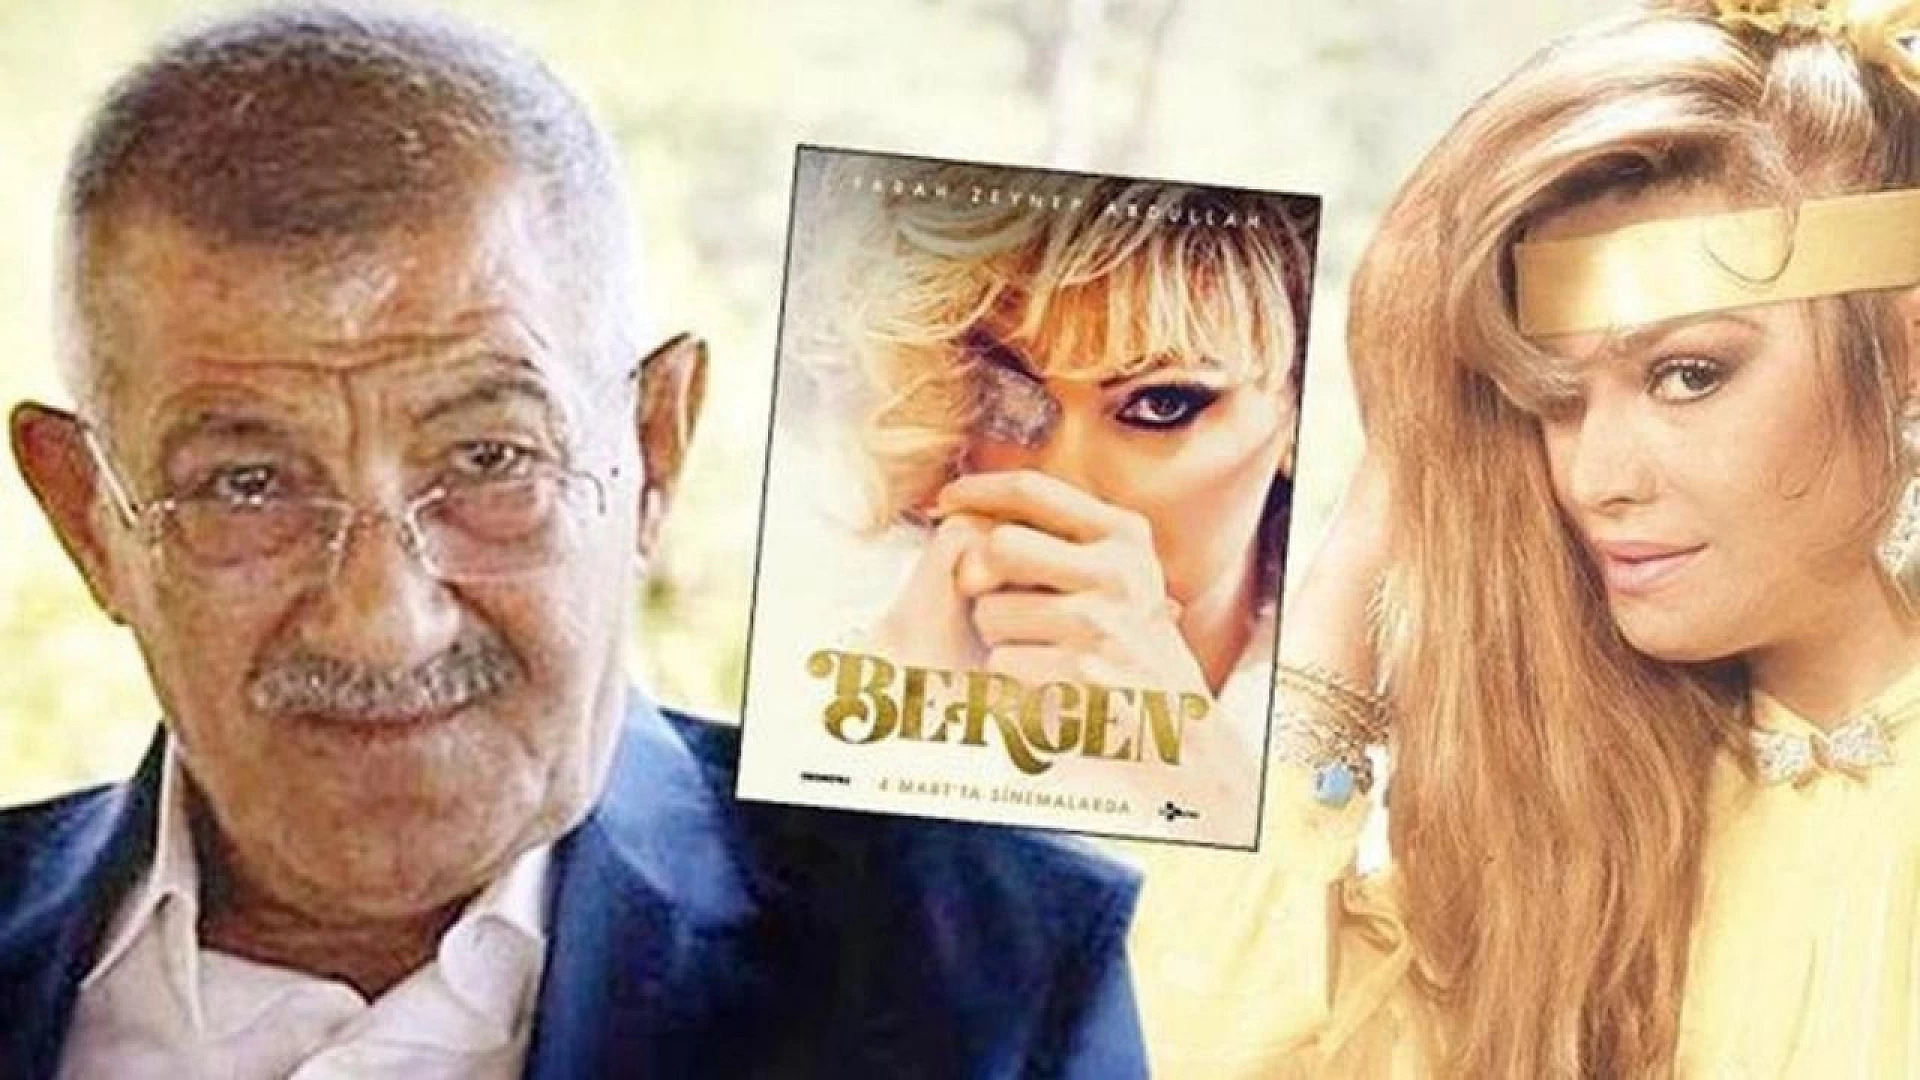 Halis Serbest, Bergen filmine açtığı davayı kaybetti